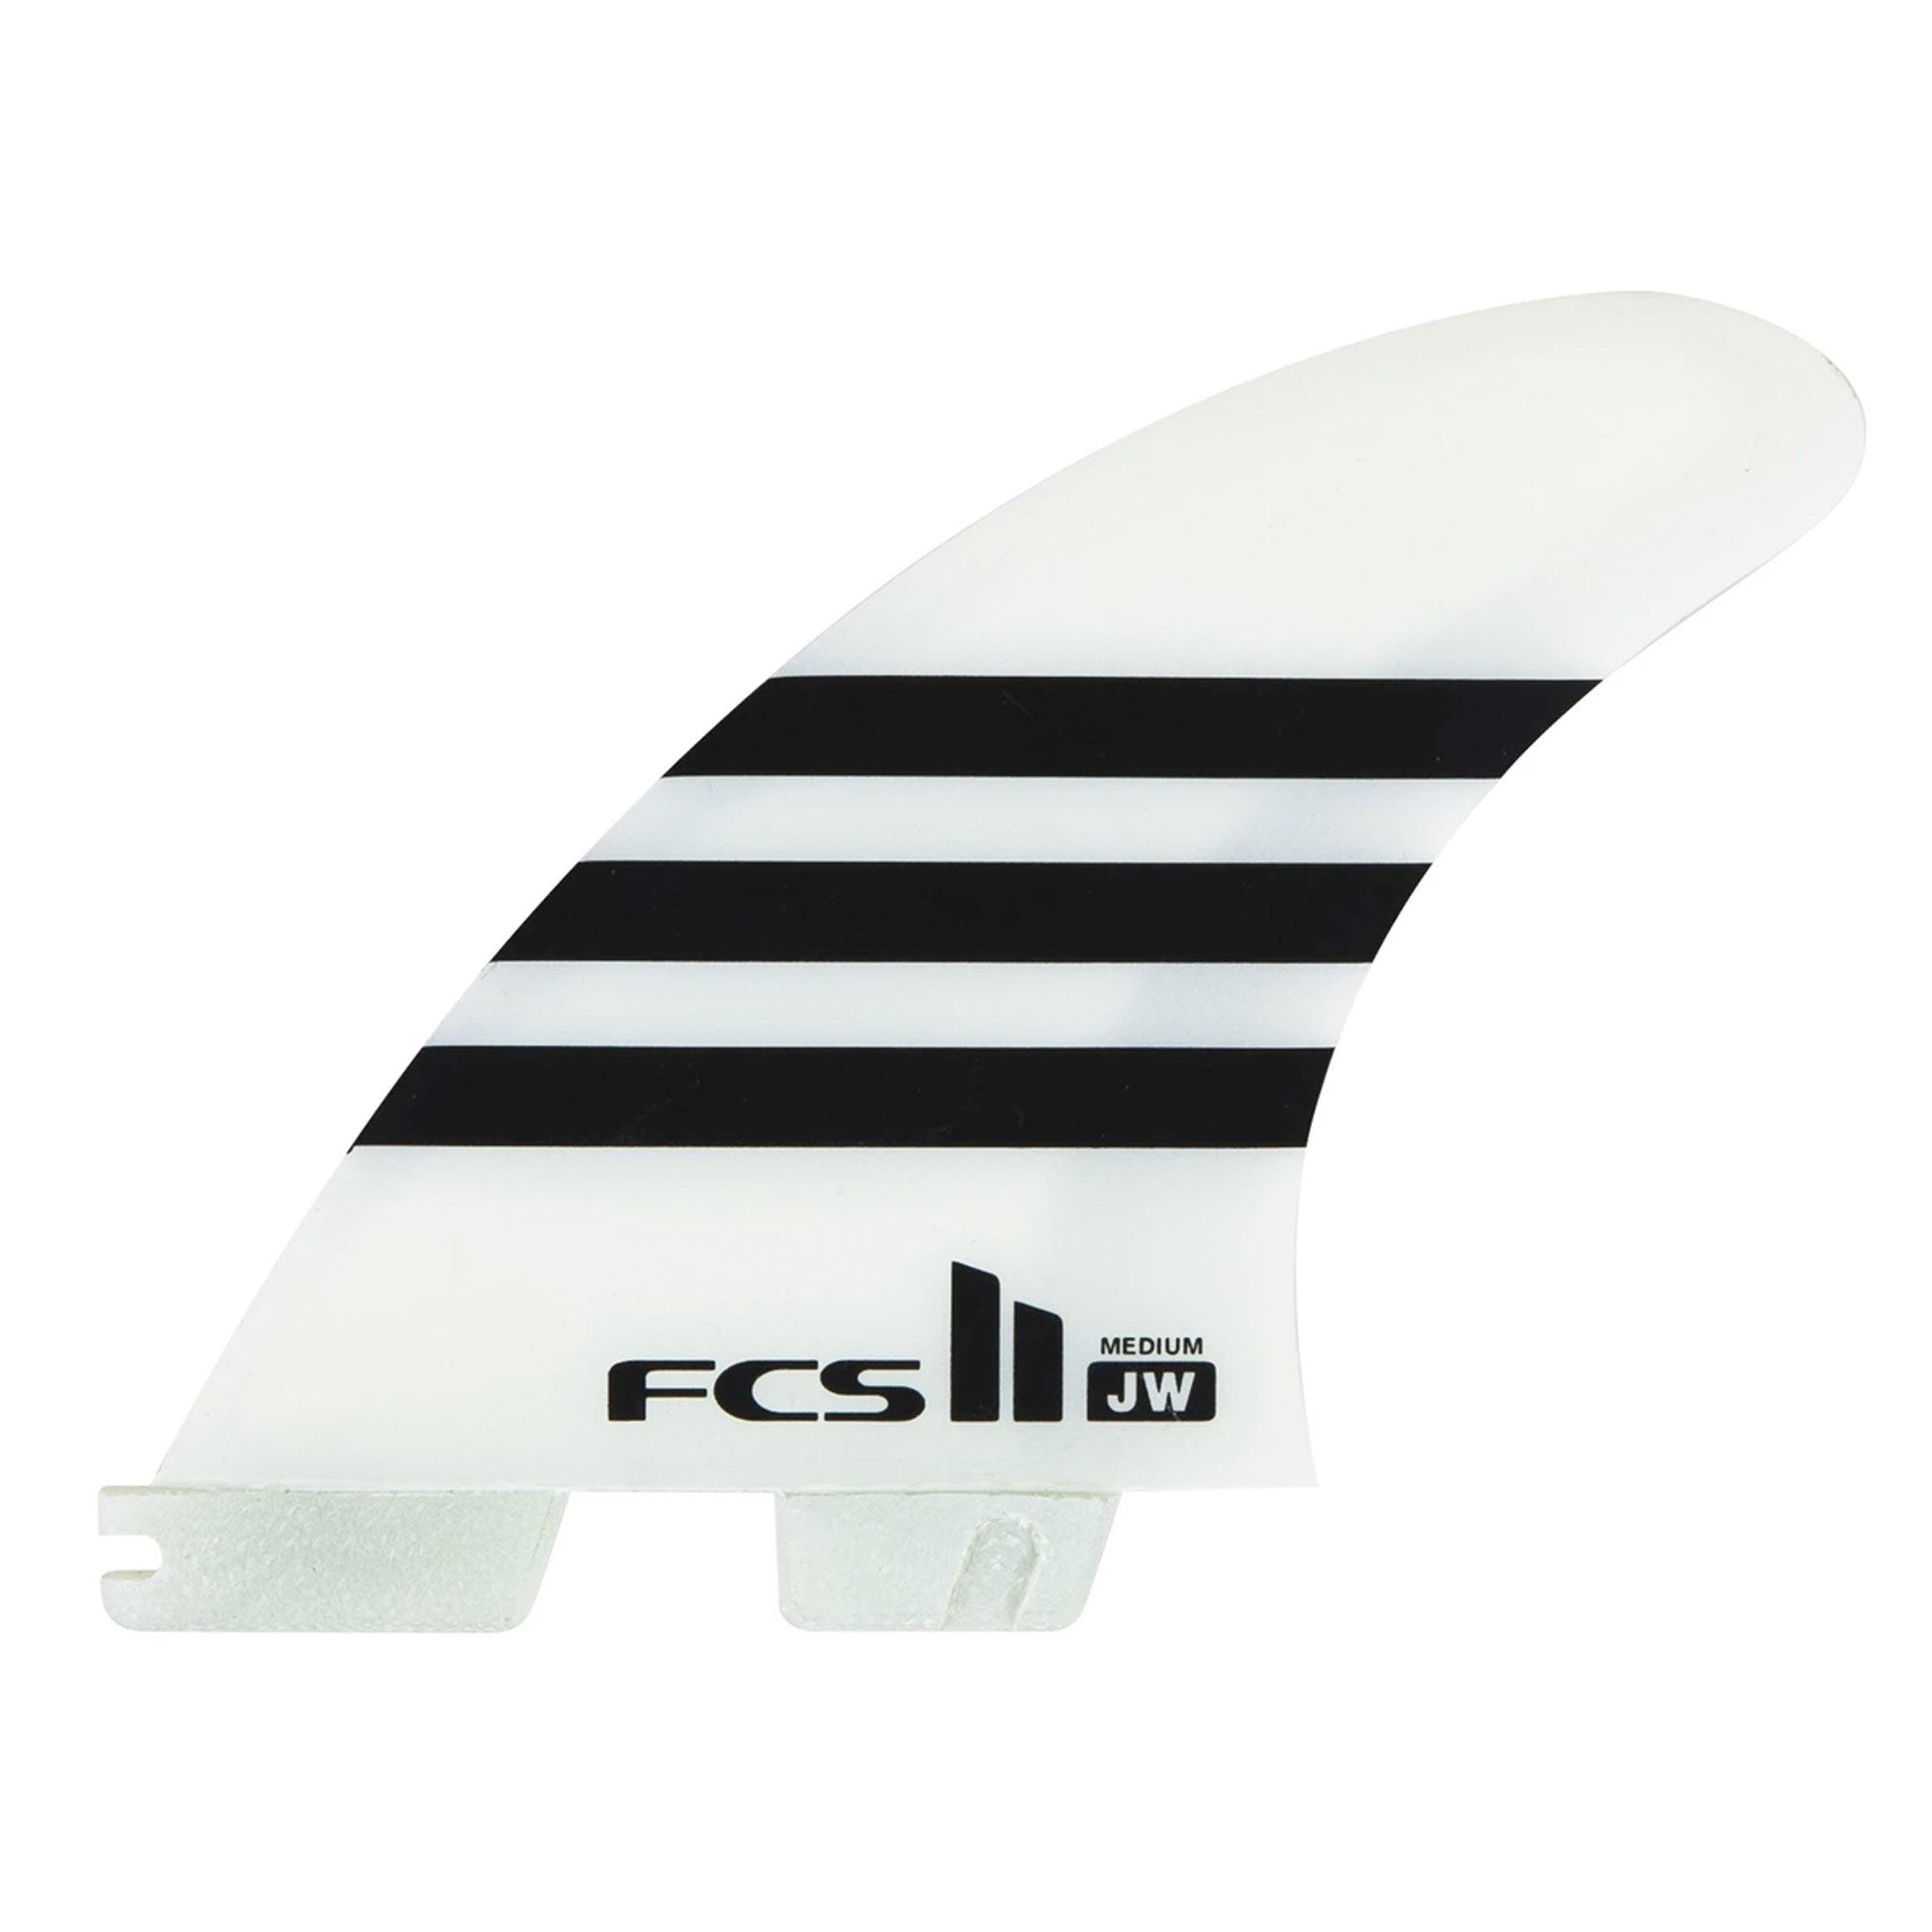 FCS II Julian Wilson Medium PC Tri Surfboard Fins